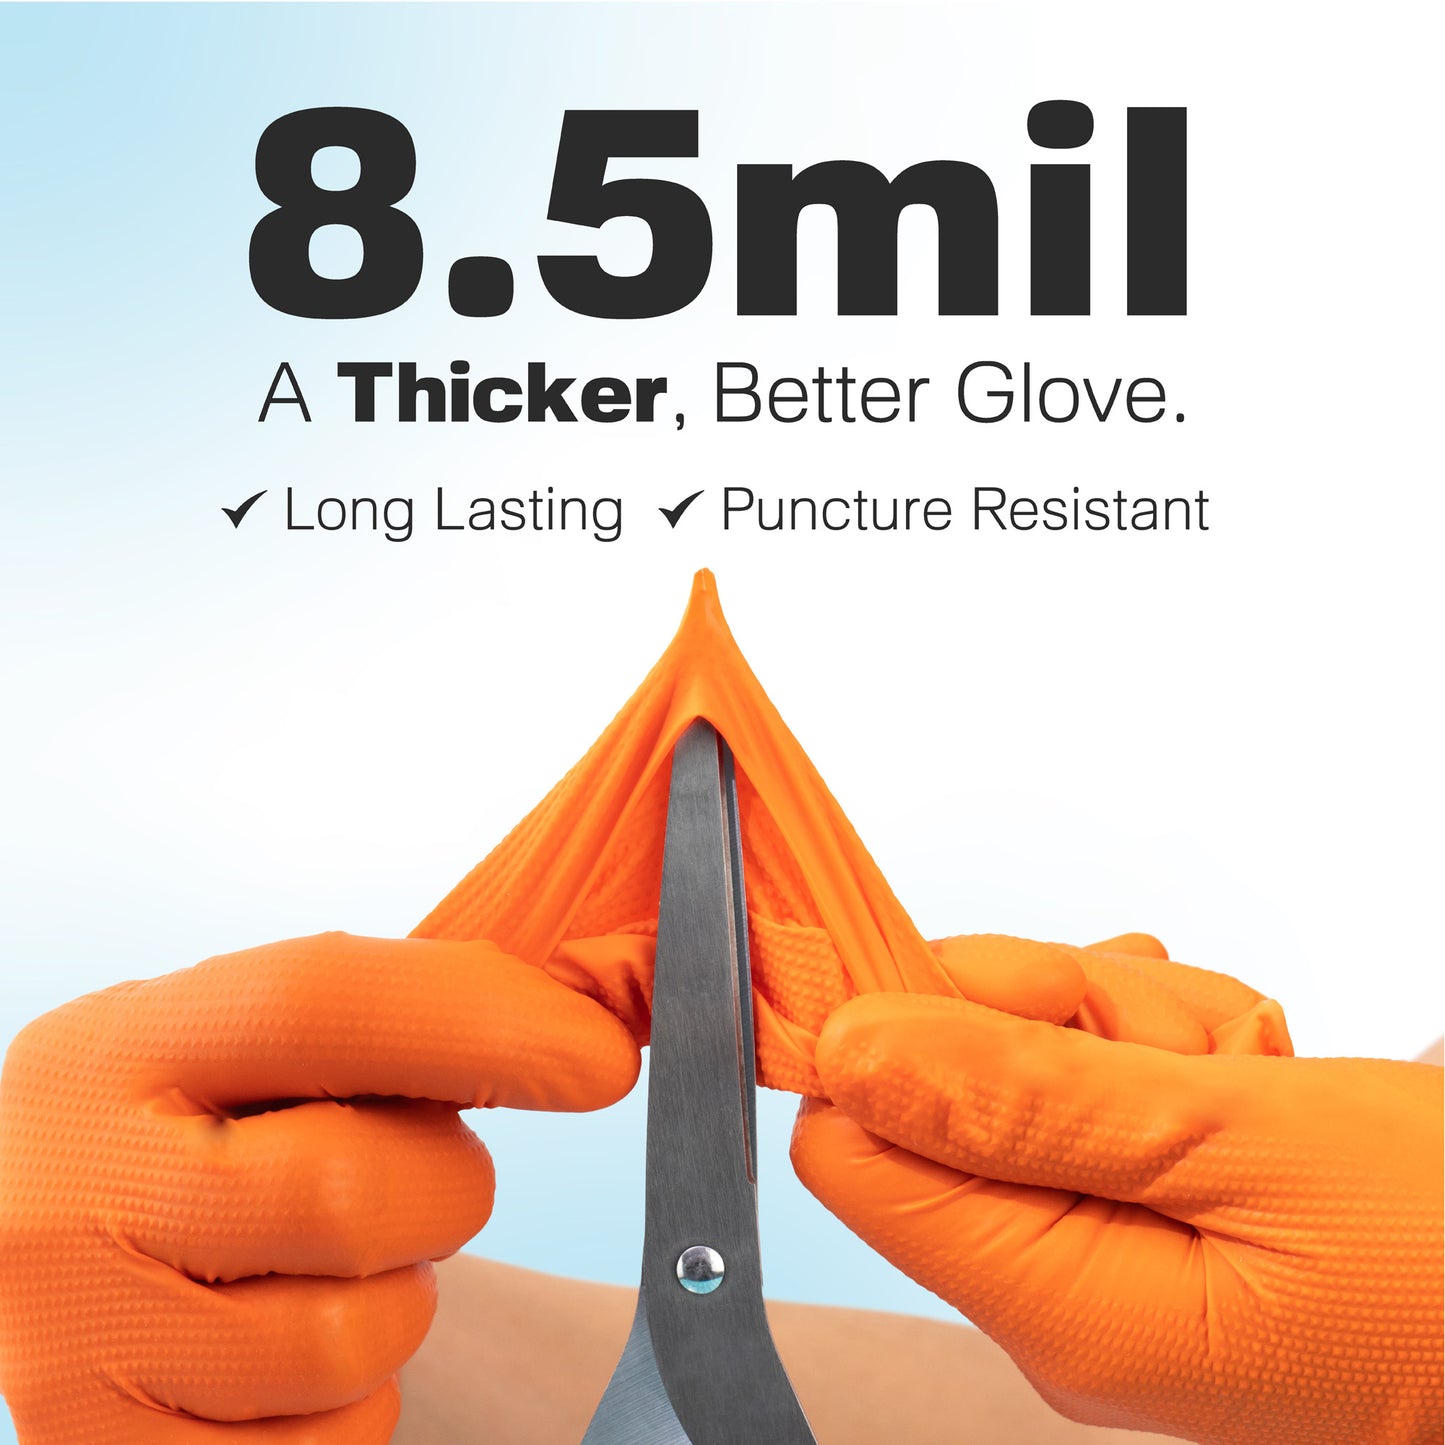 8.5mil Orange Nitrile Gloves